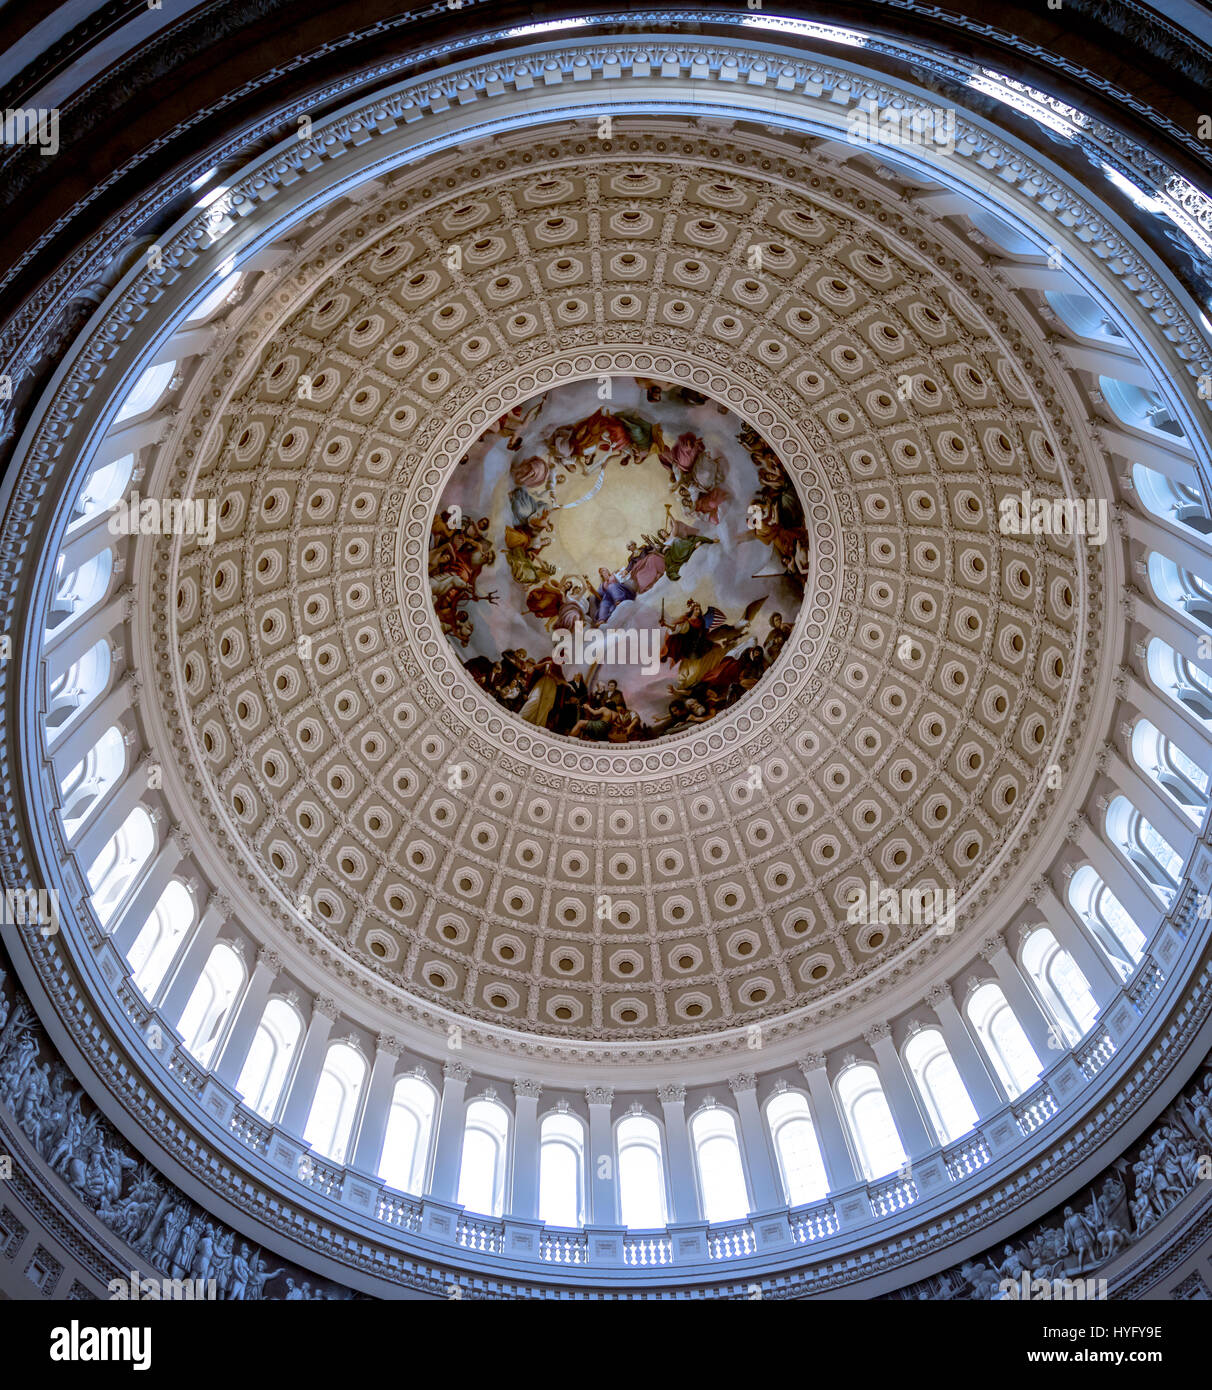 L'intérieur du dôme rotonde Capitol Building - Washington, D.C., USA Banque D'Images